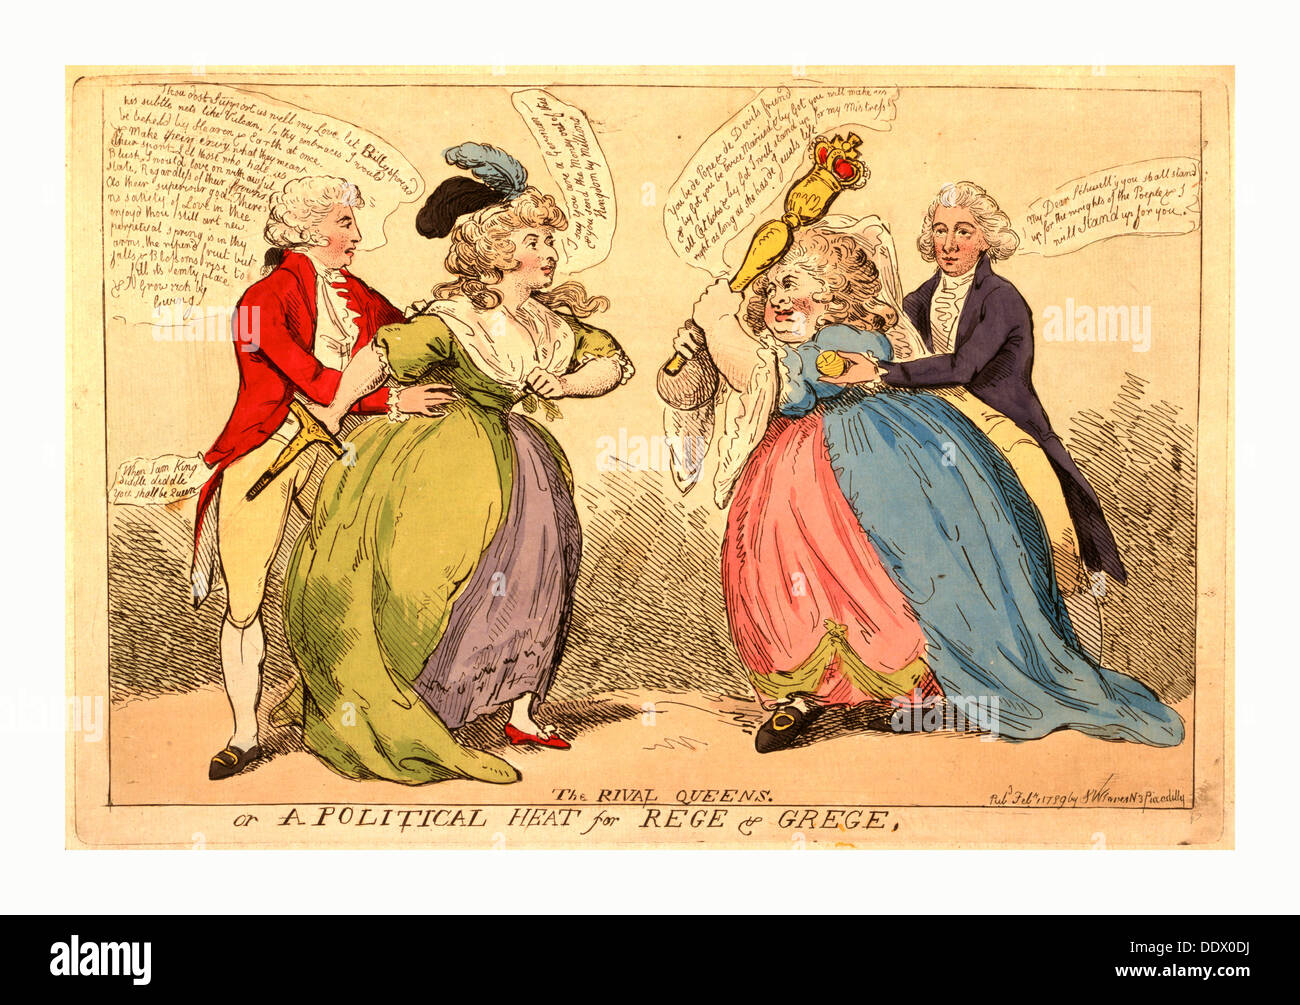 El rival de reinas o un calor político de Rege & Grege, grabado en 1789, un encuentro entre dos señoras, la Sra. Fitzherbert stout Foto de stock